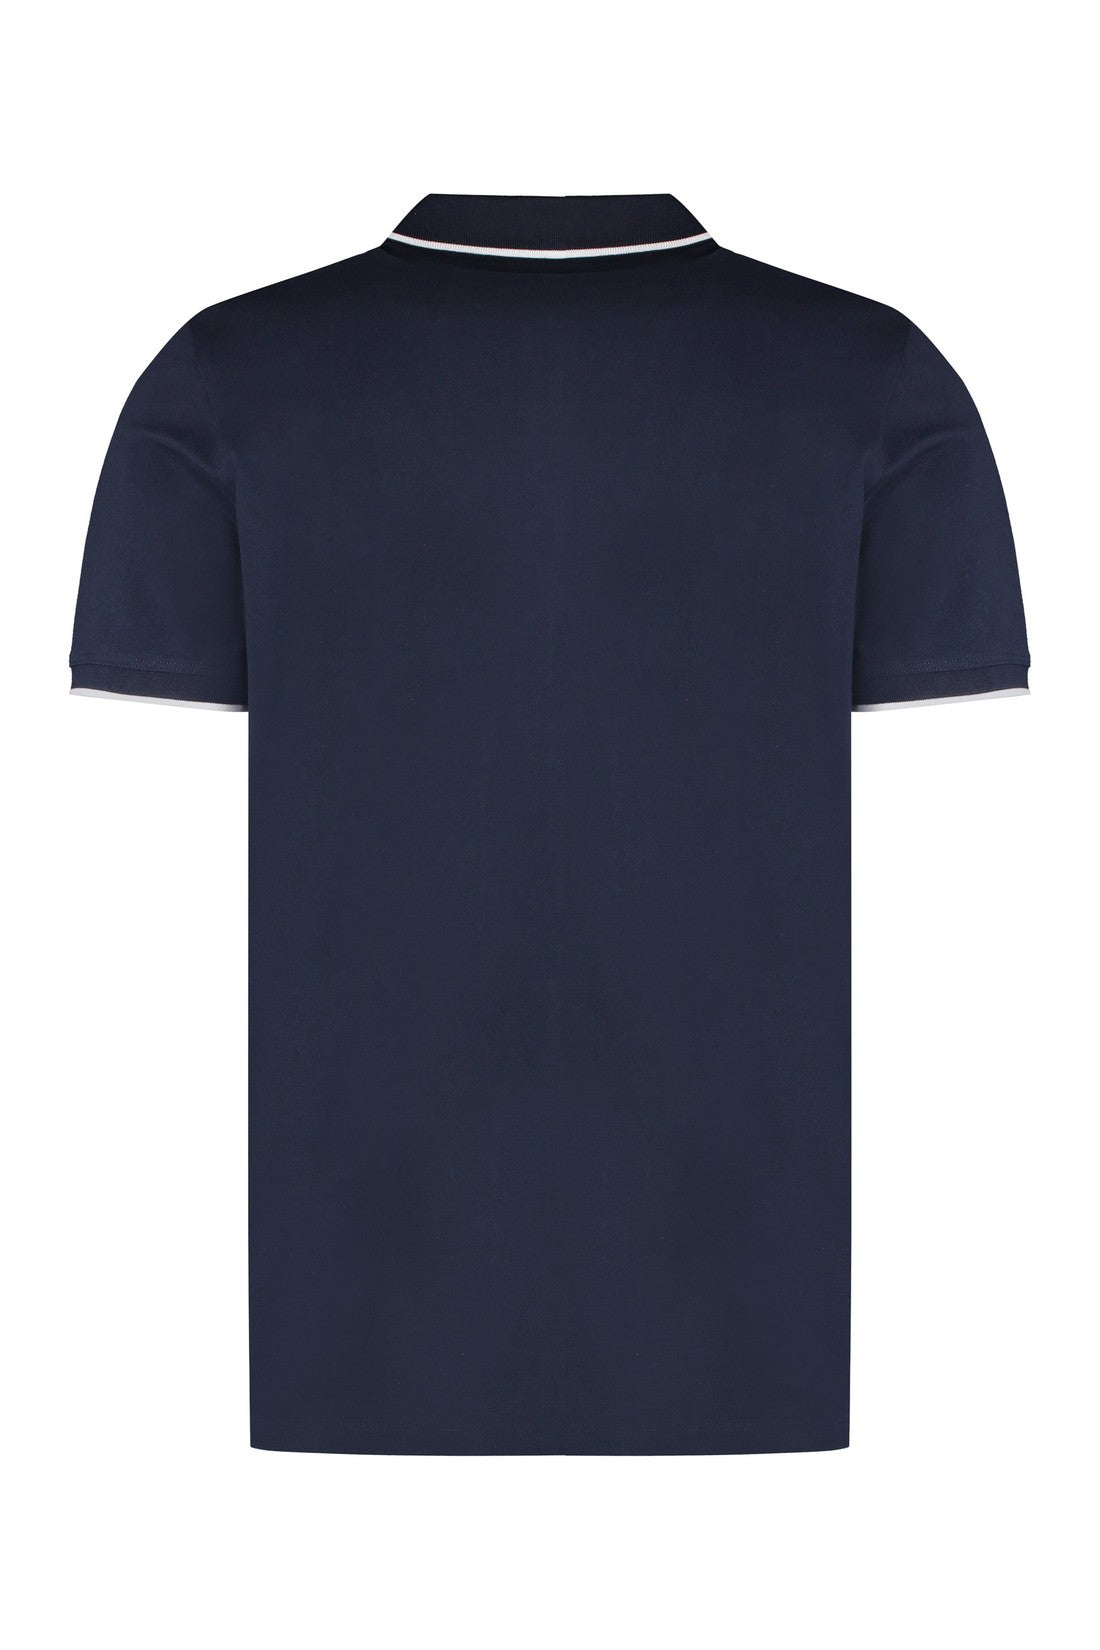 BOSS-OUTLET-SALE-Cotton-piqué polo shirt-ARCHIVIST